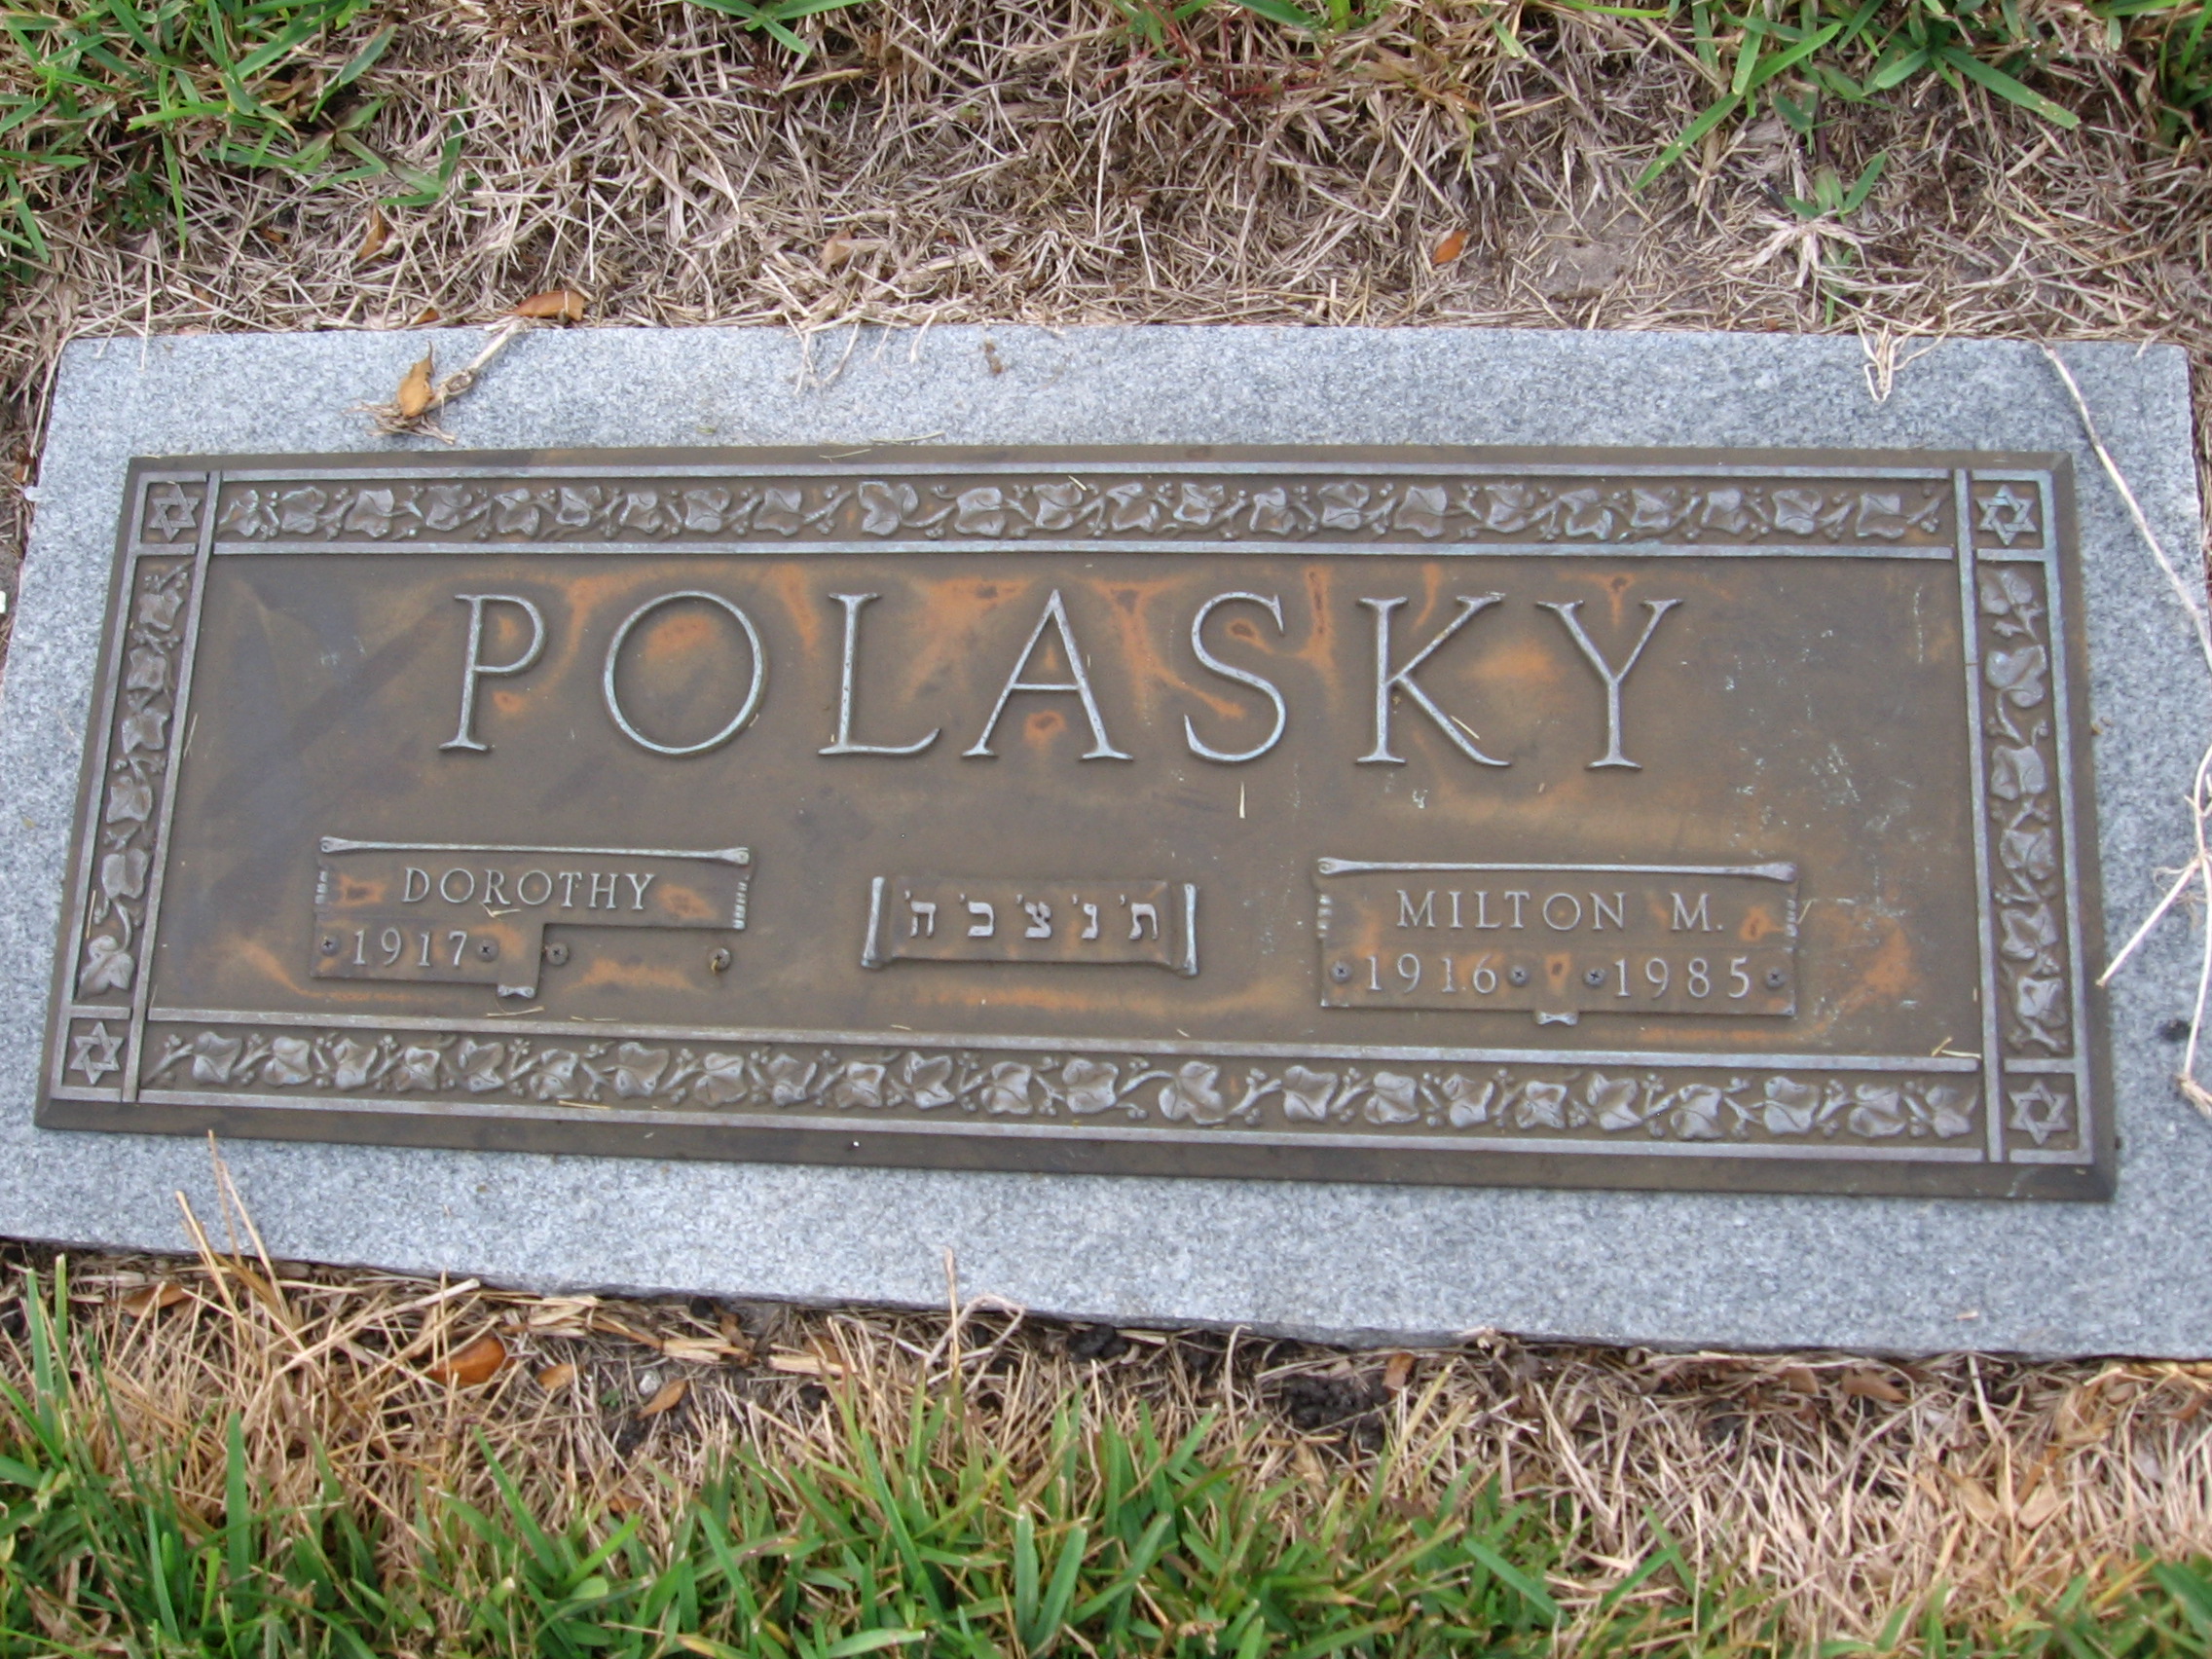 Dorothy Polasky